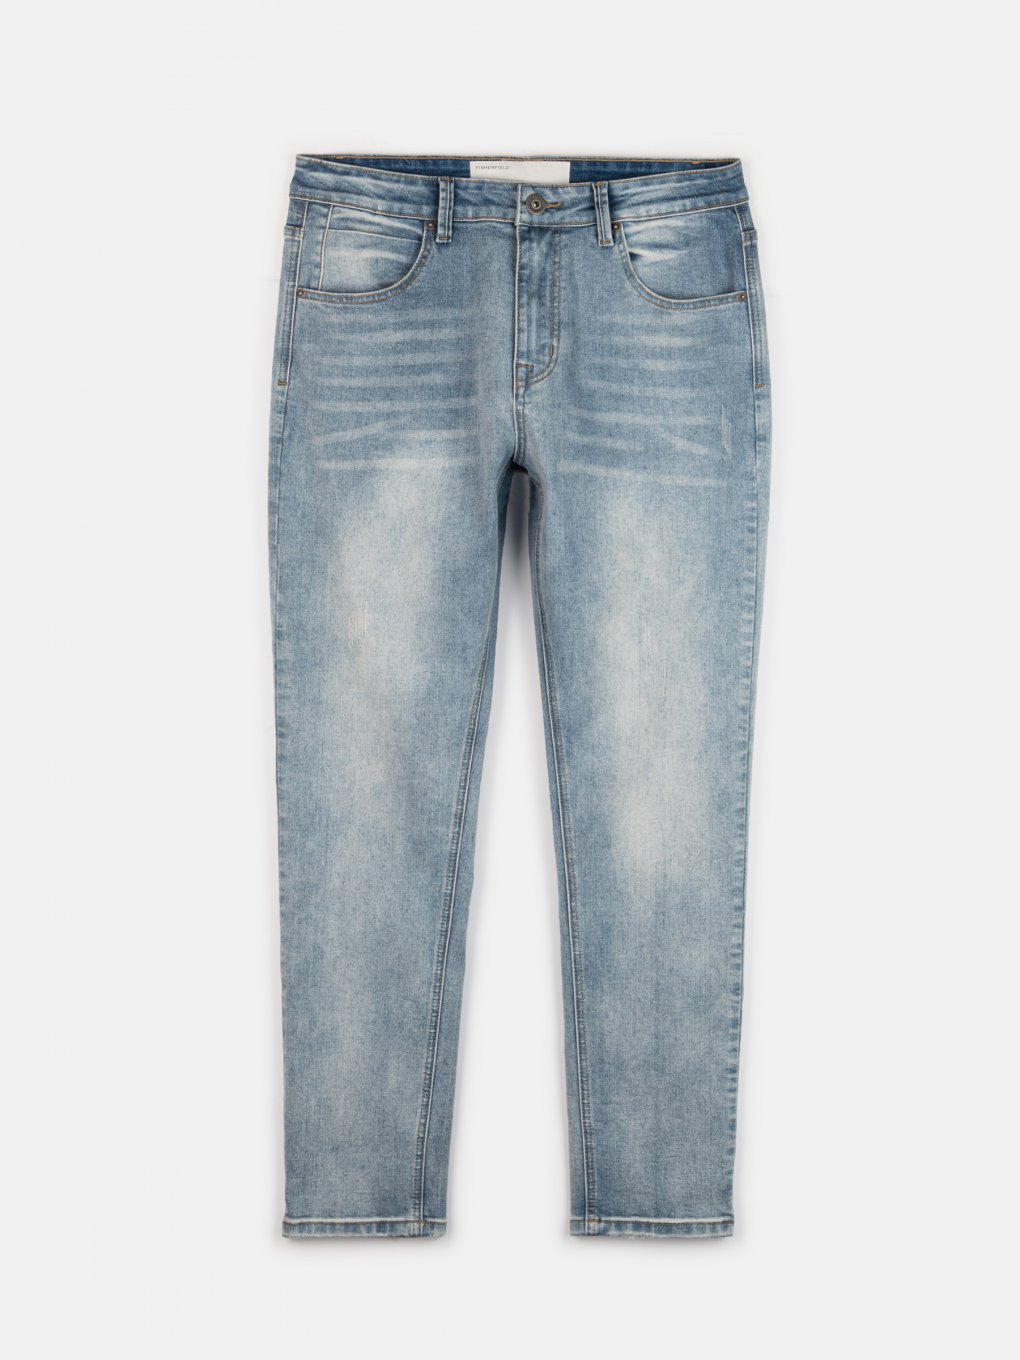 Spodnie jeansowe proste slim dla mężczyzn